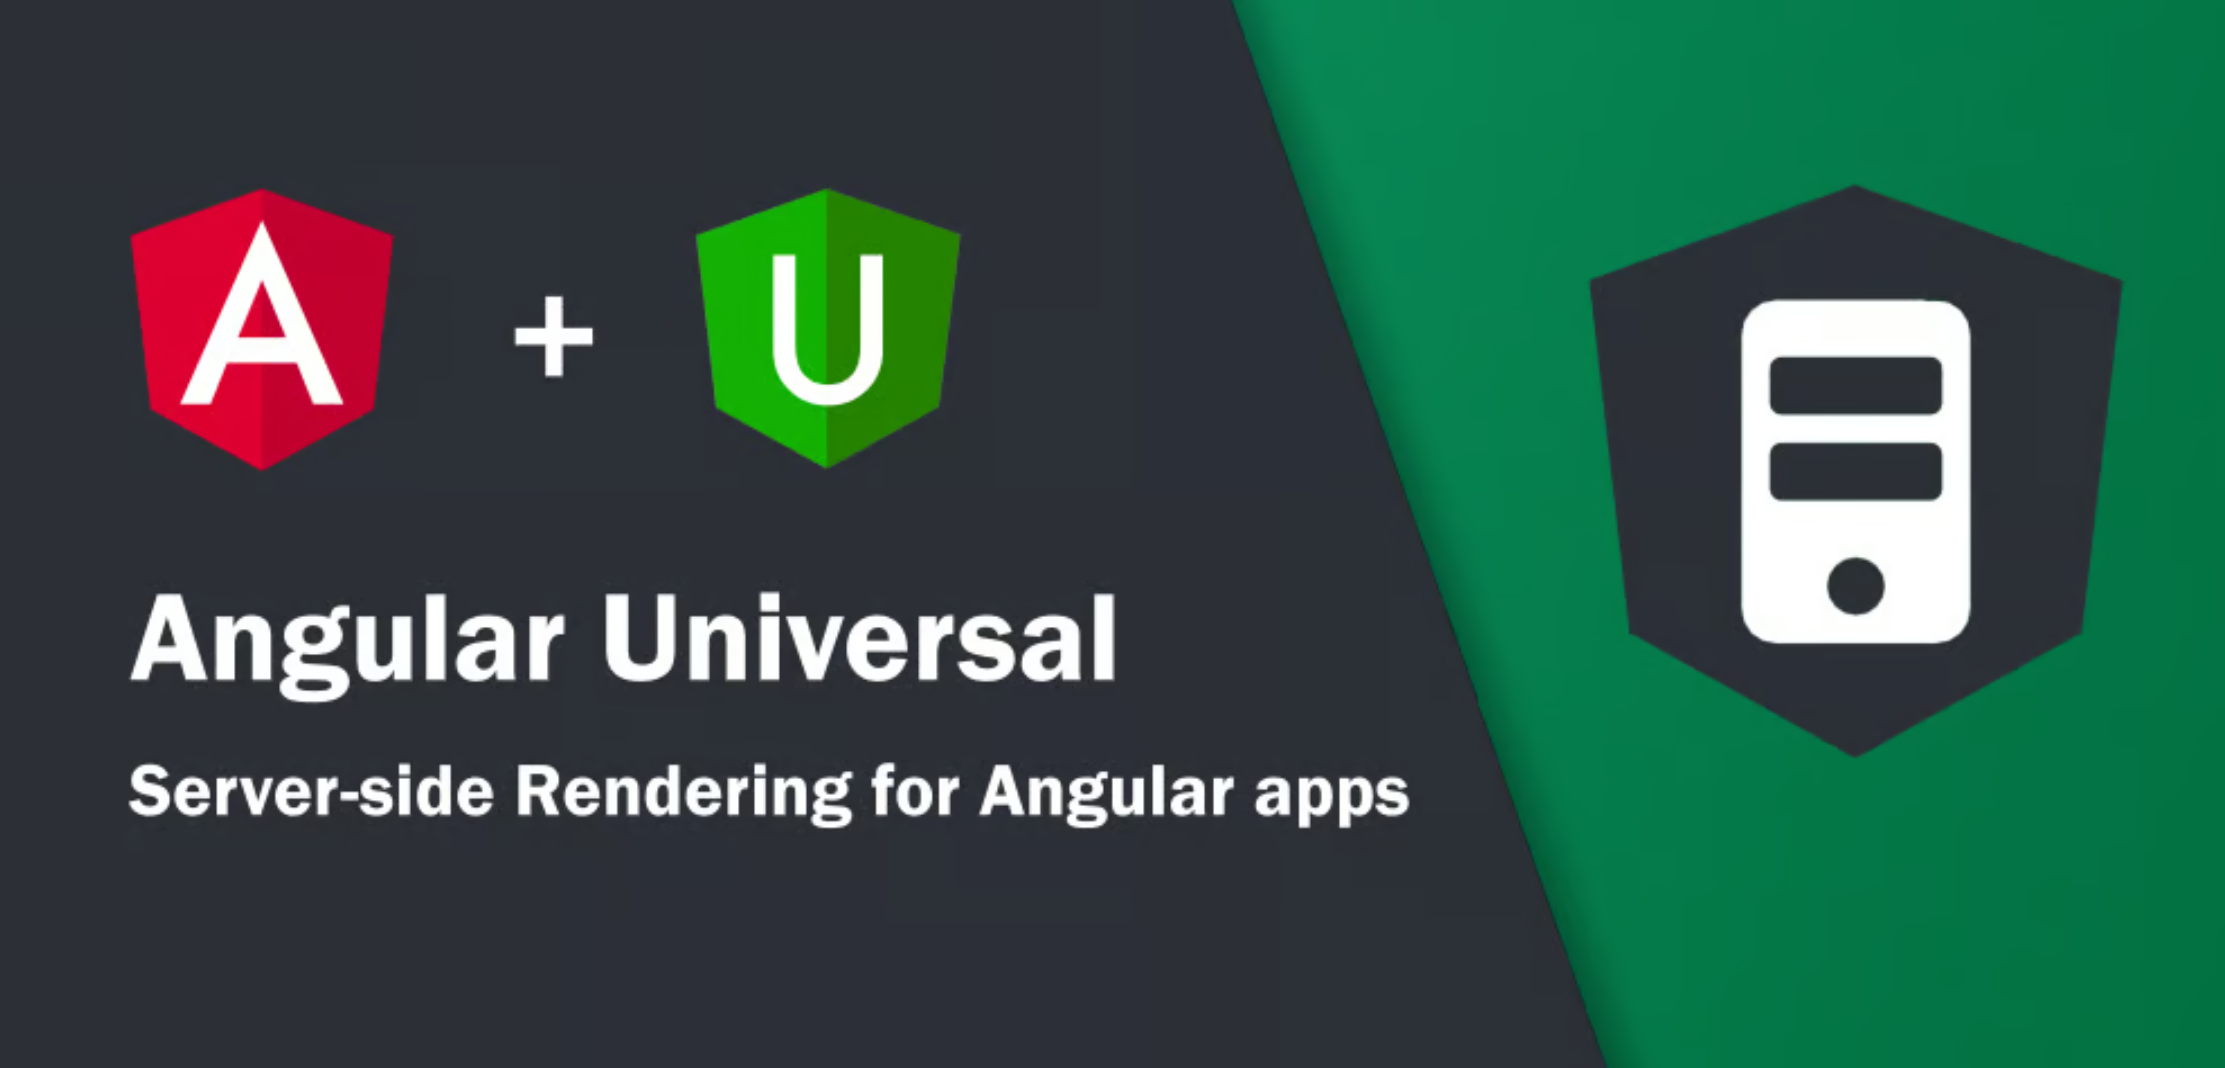 Angular Universal Applications